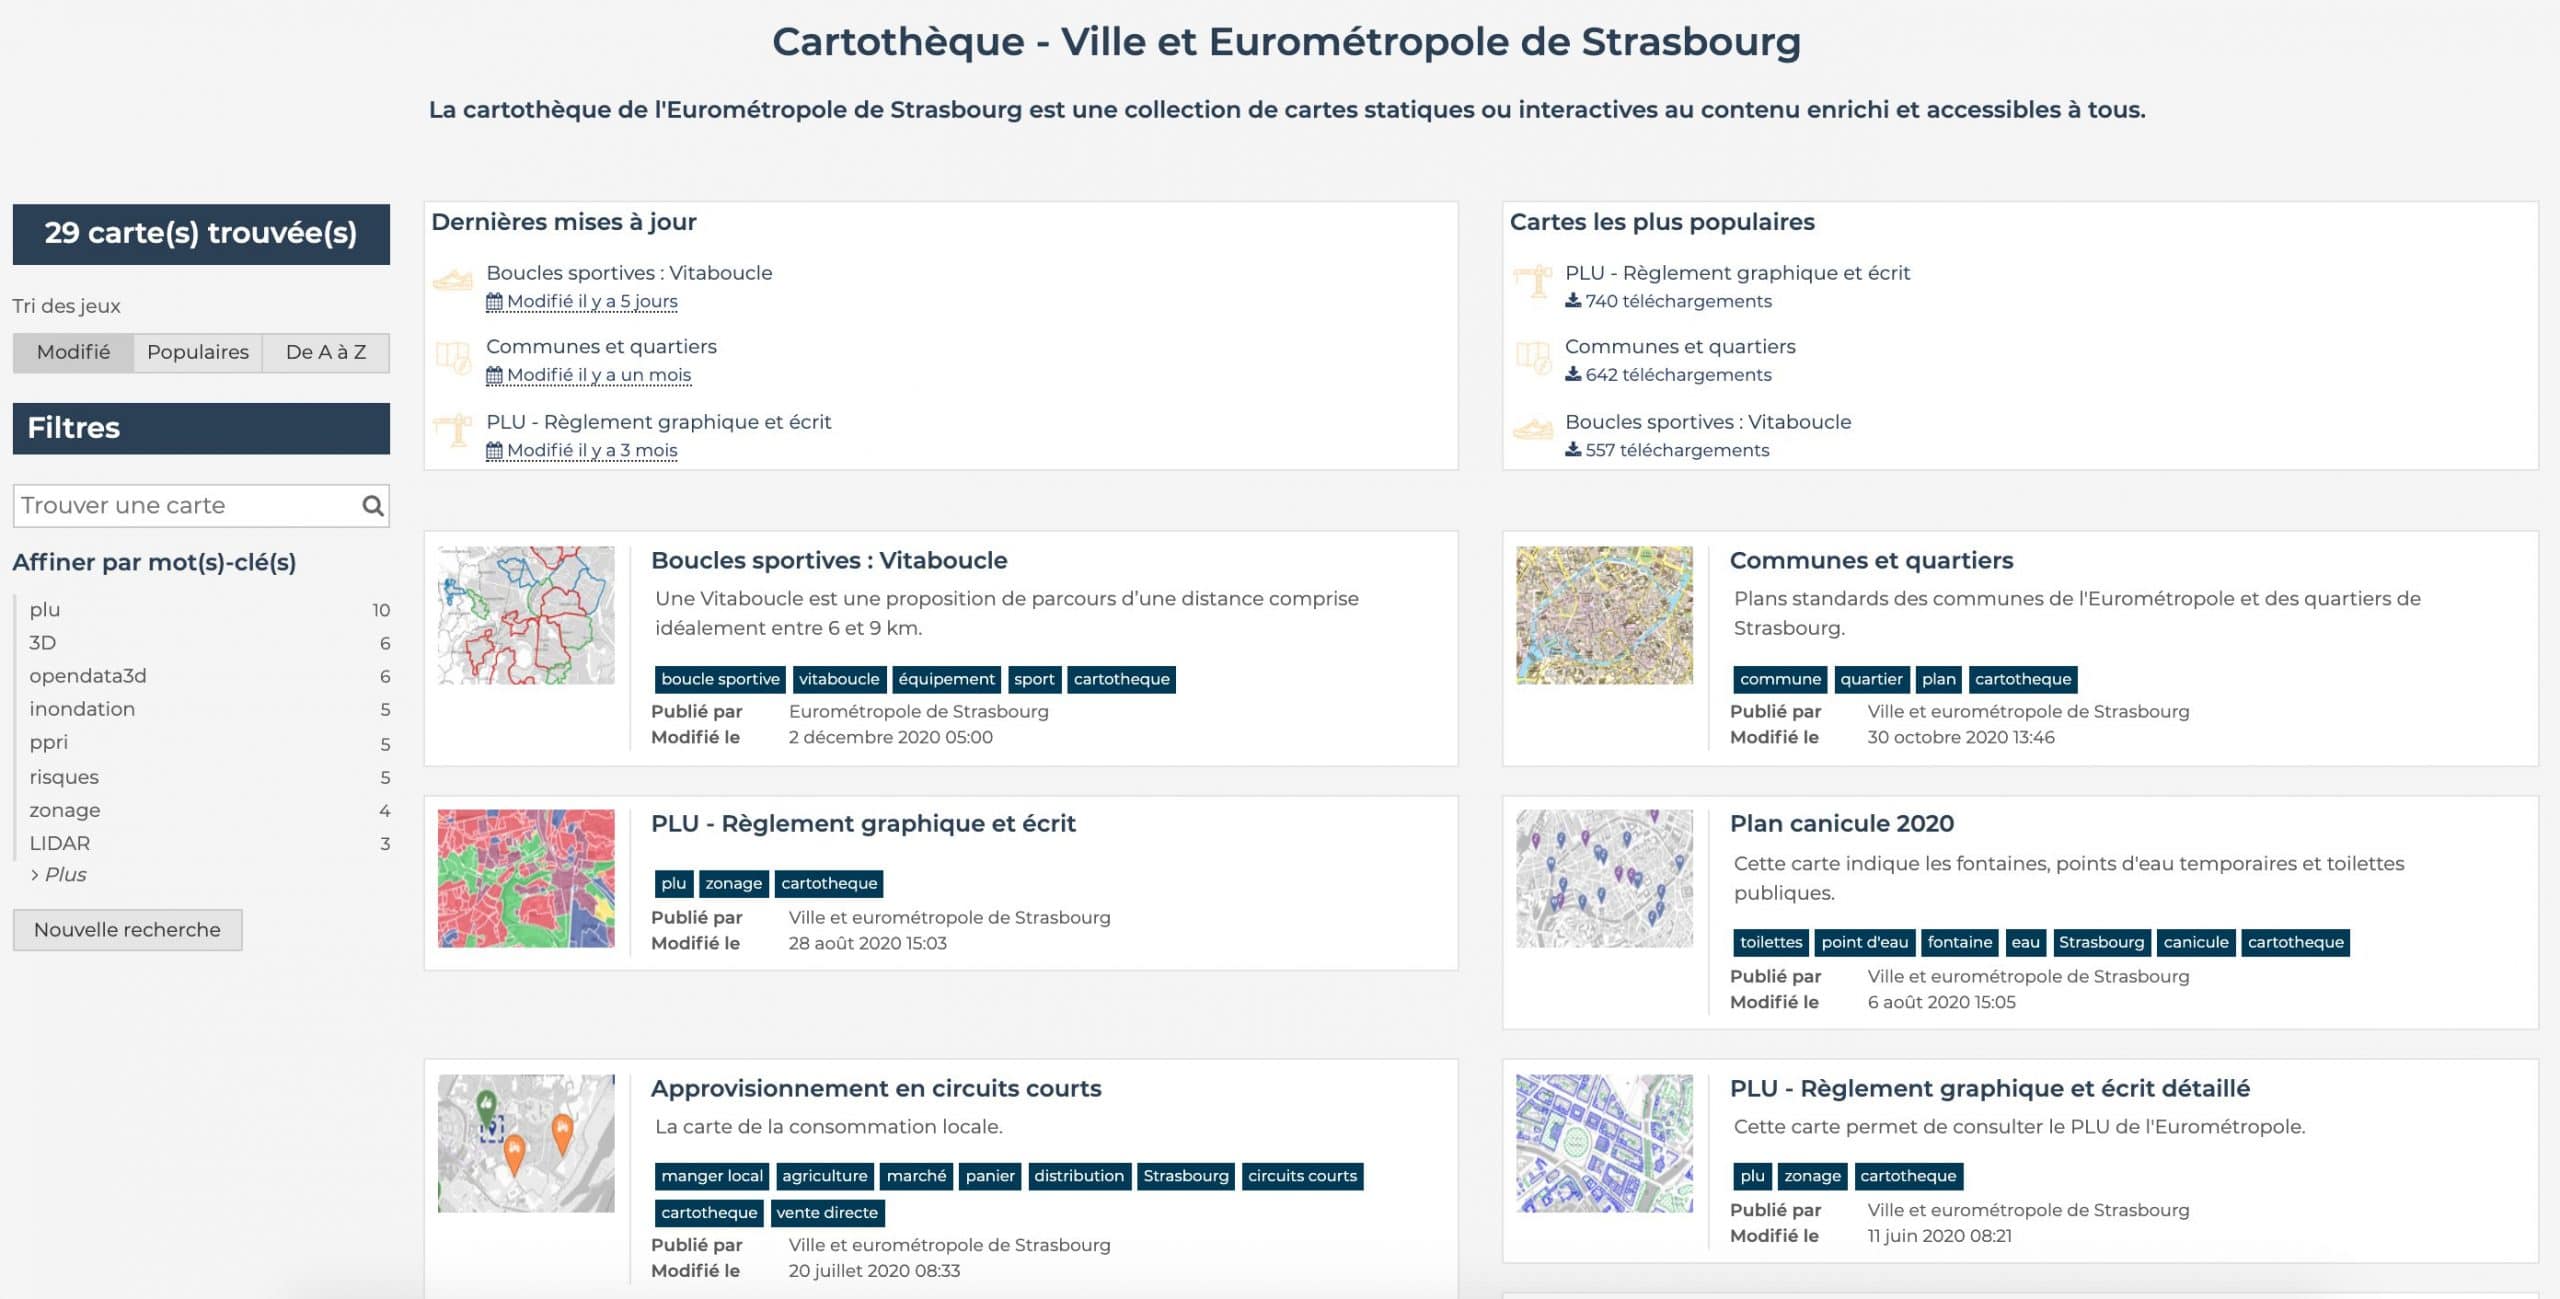 awards-strasbourg data portal